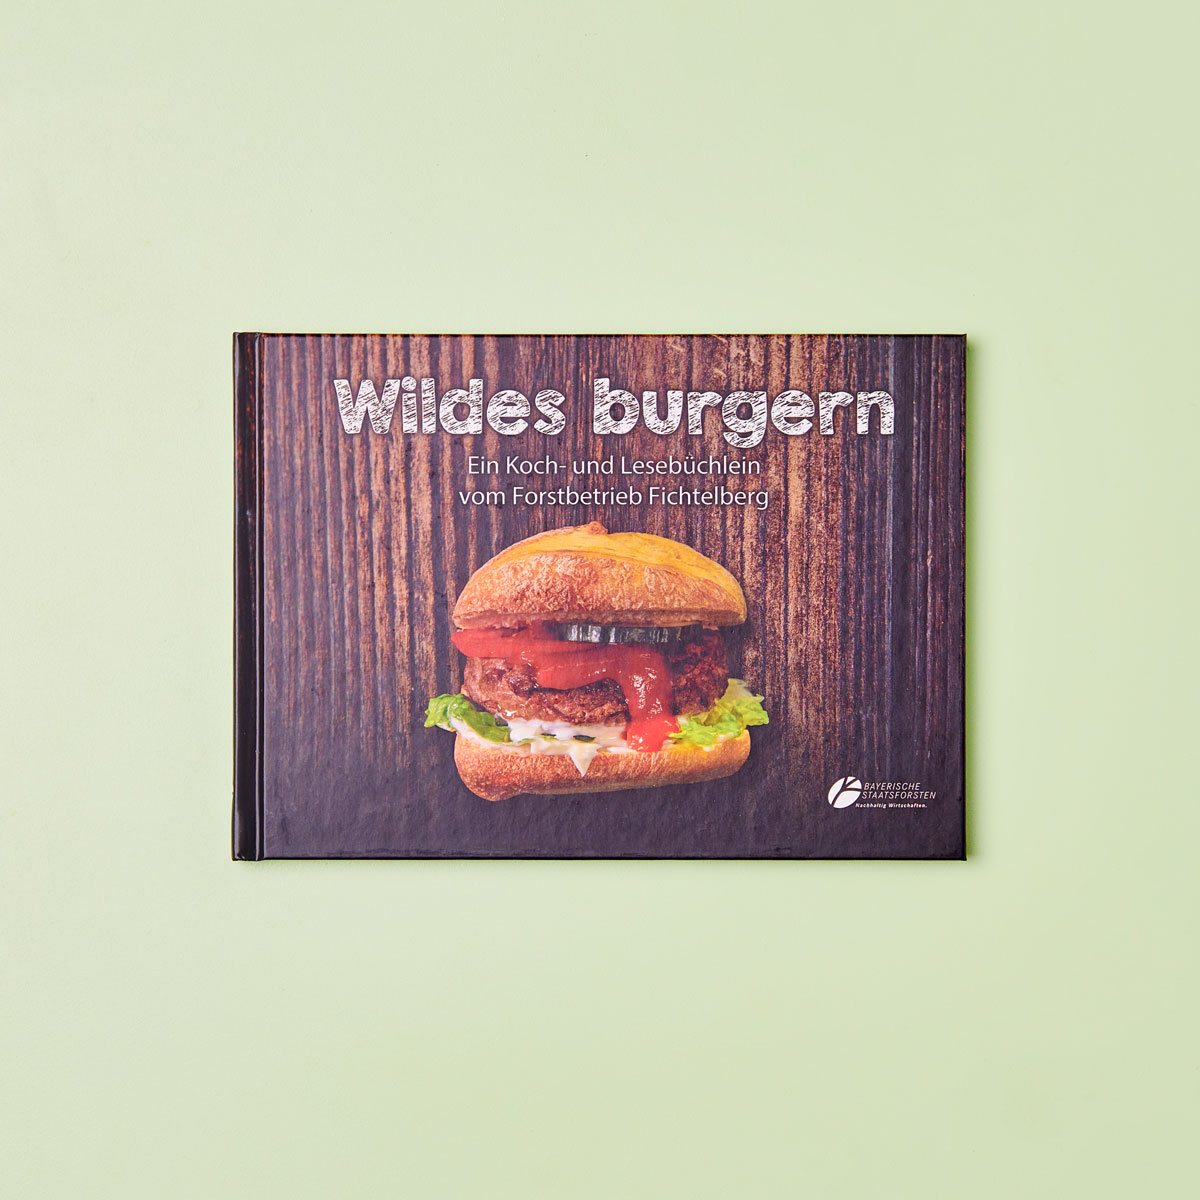 Wildkochbuch - Wildes burgern